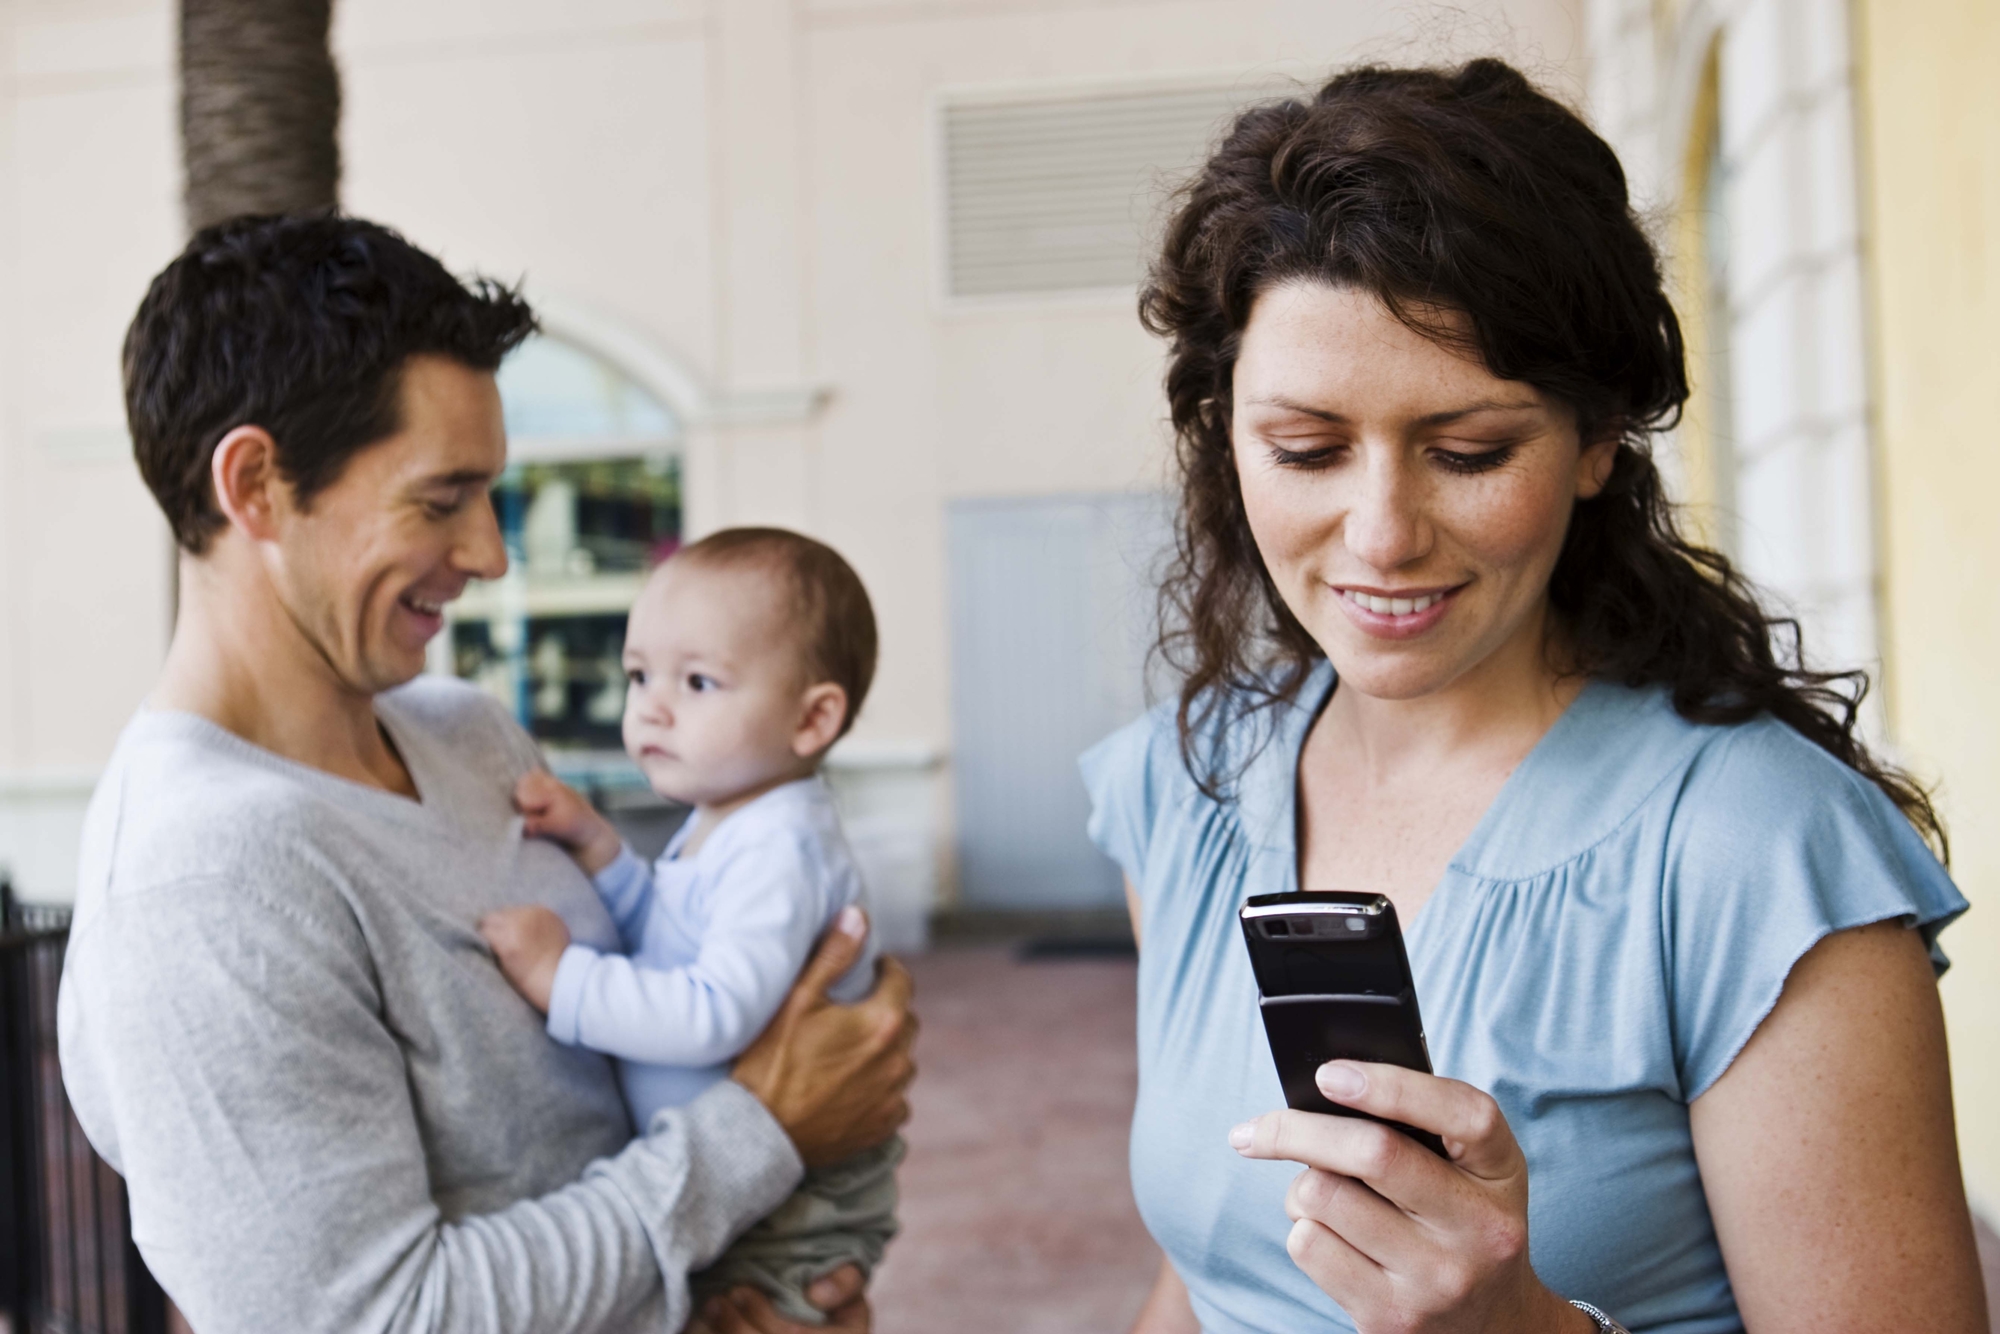 Resultado de imagem para Dispositivos móveis x Relação pais e filhos